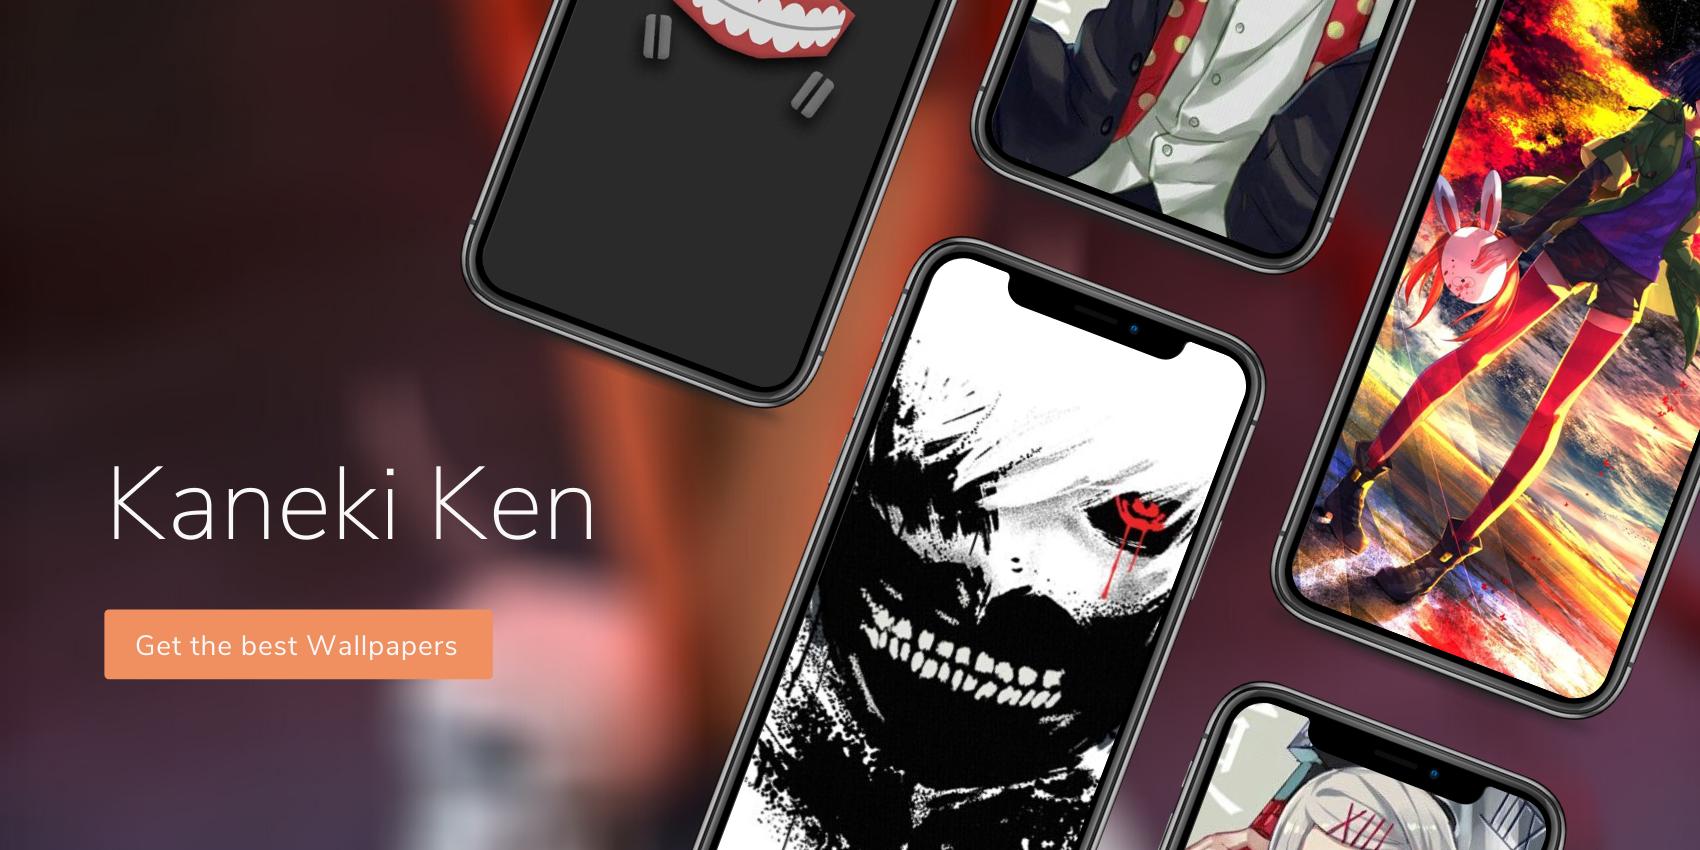 Kaneki Ken Hd Wallpapers For Android Apk Download - kaneki kagune roblox